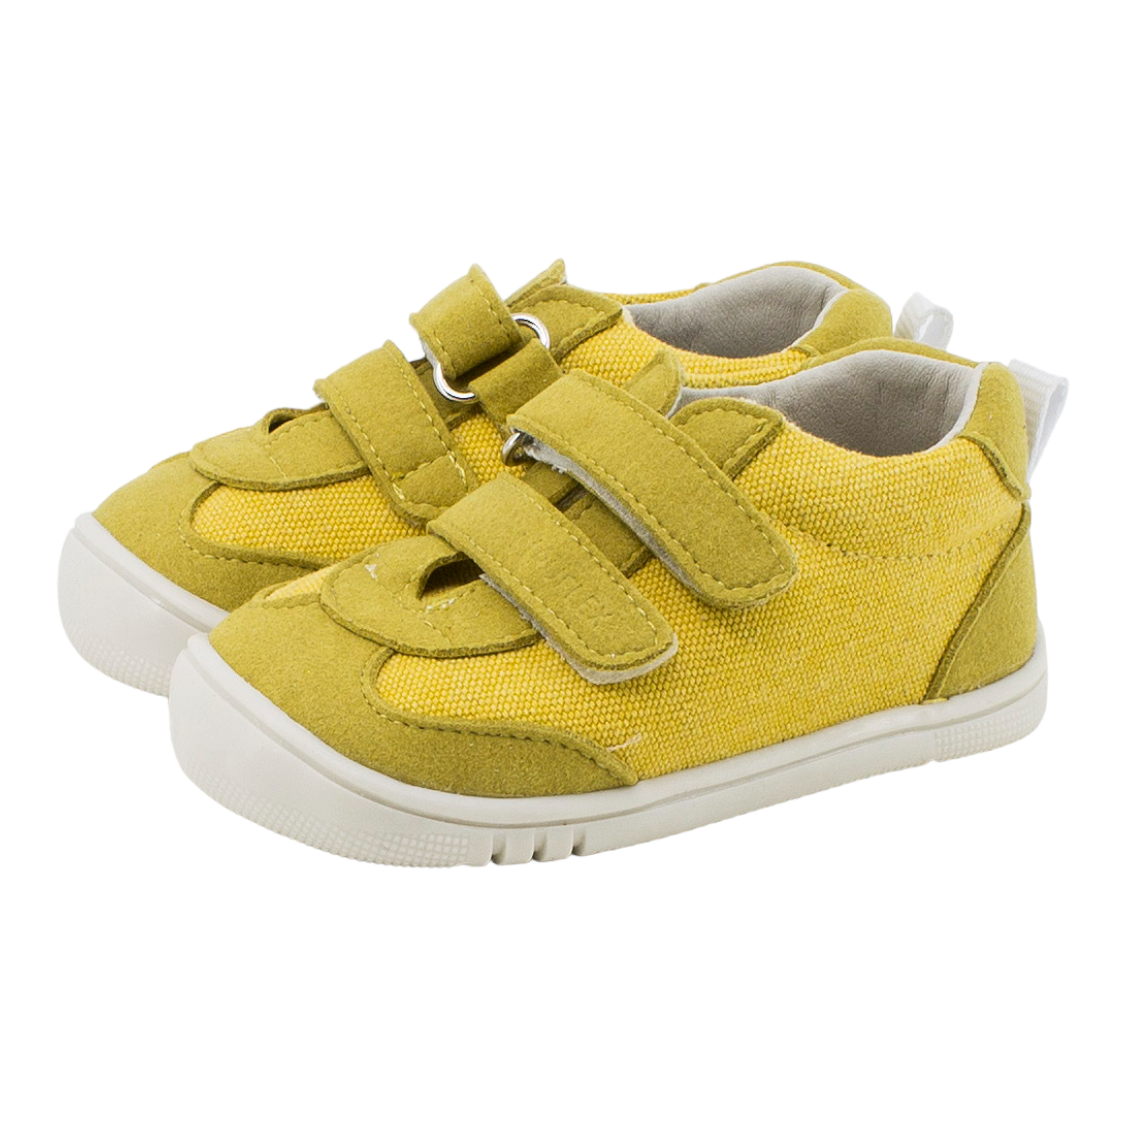 Zapato deportivo respetuoso algodón orgánico amarillo